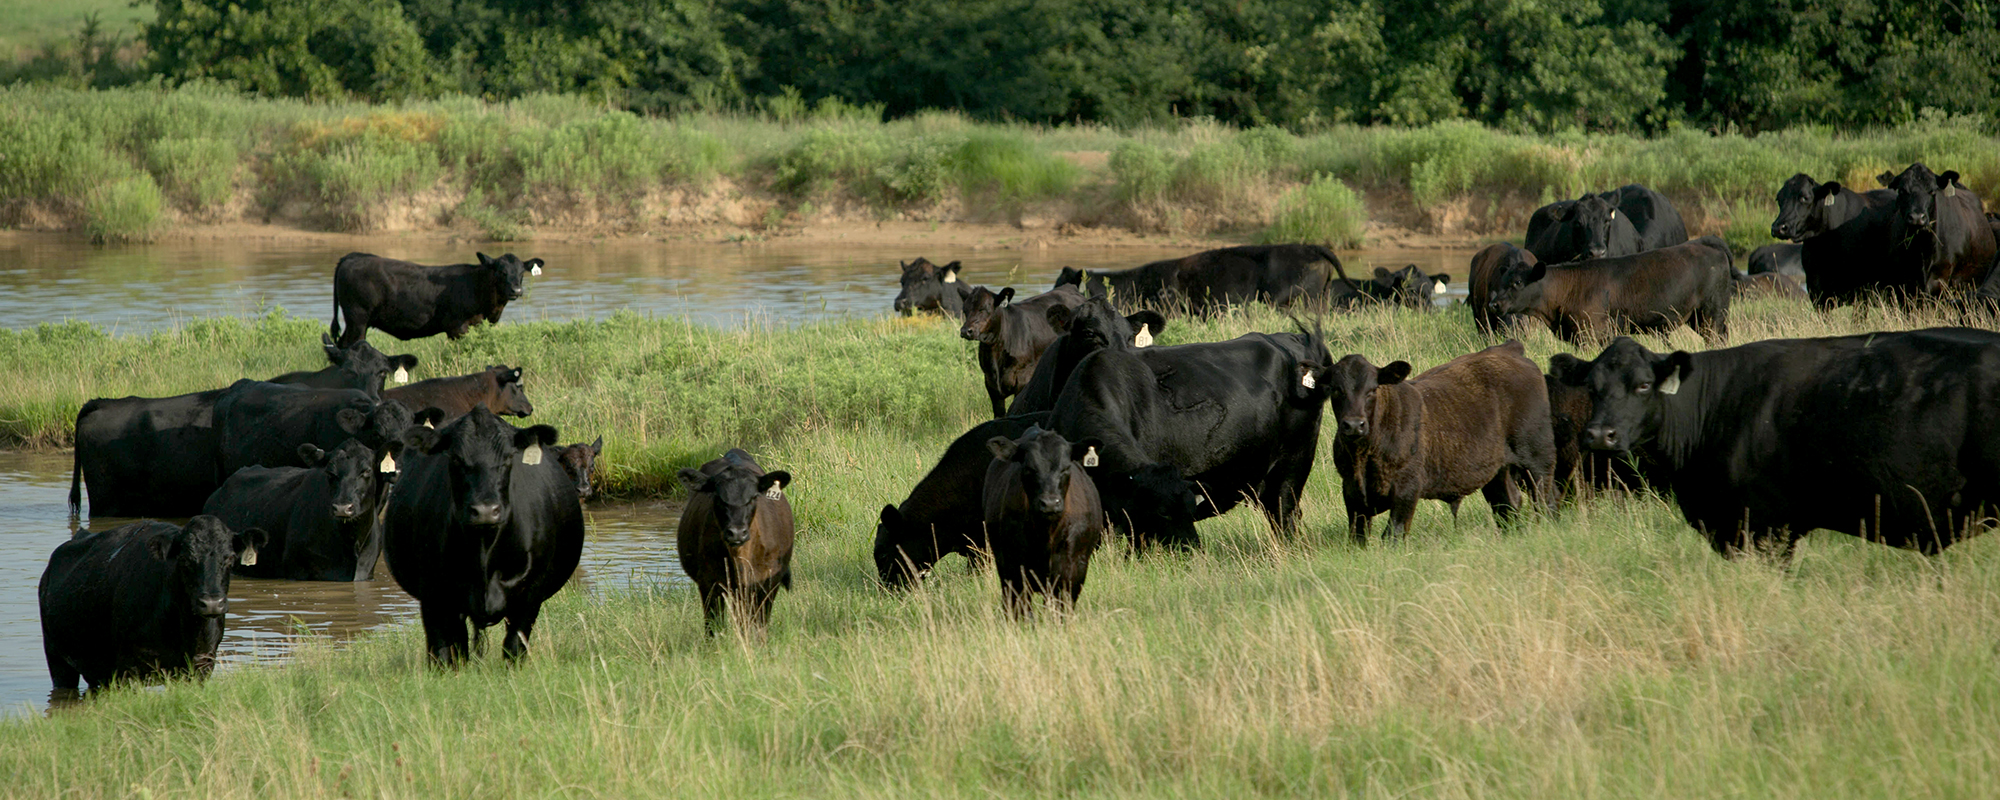 家畜在池塘附近放牧